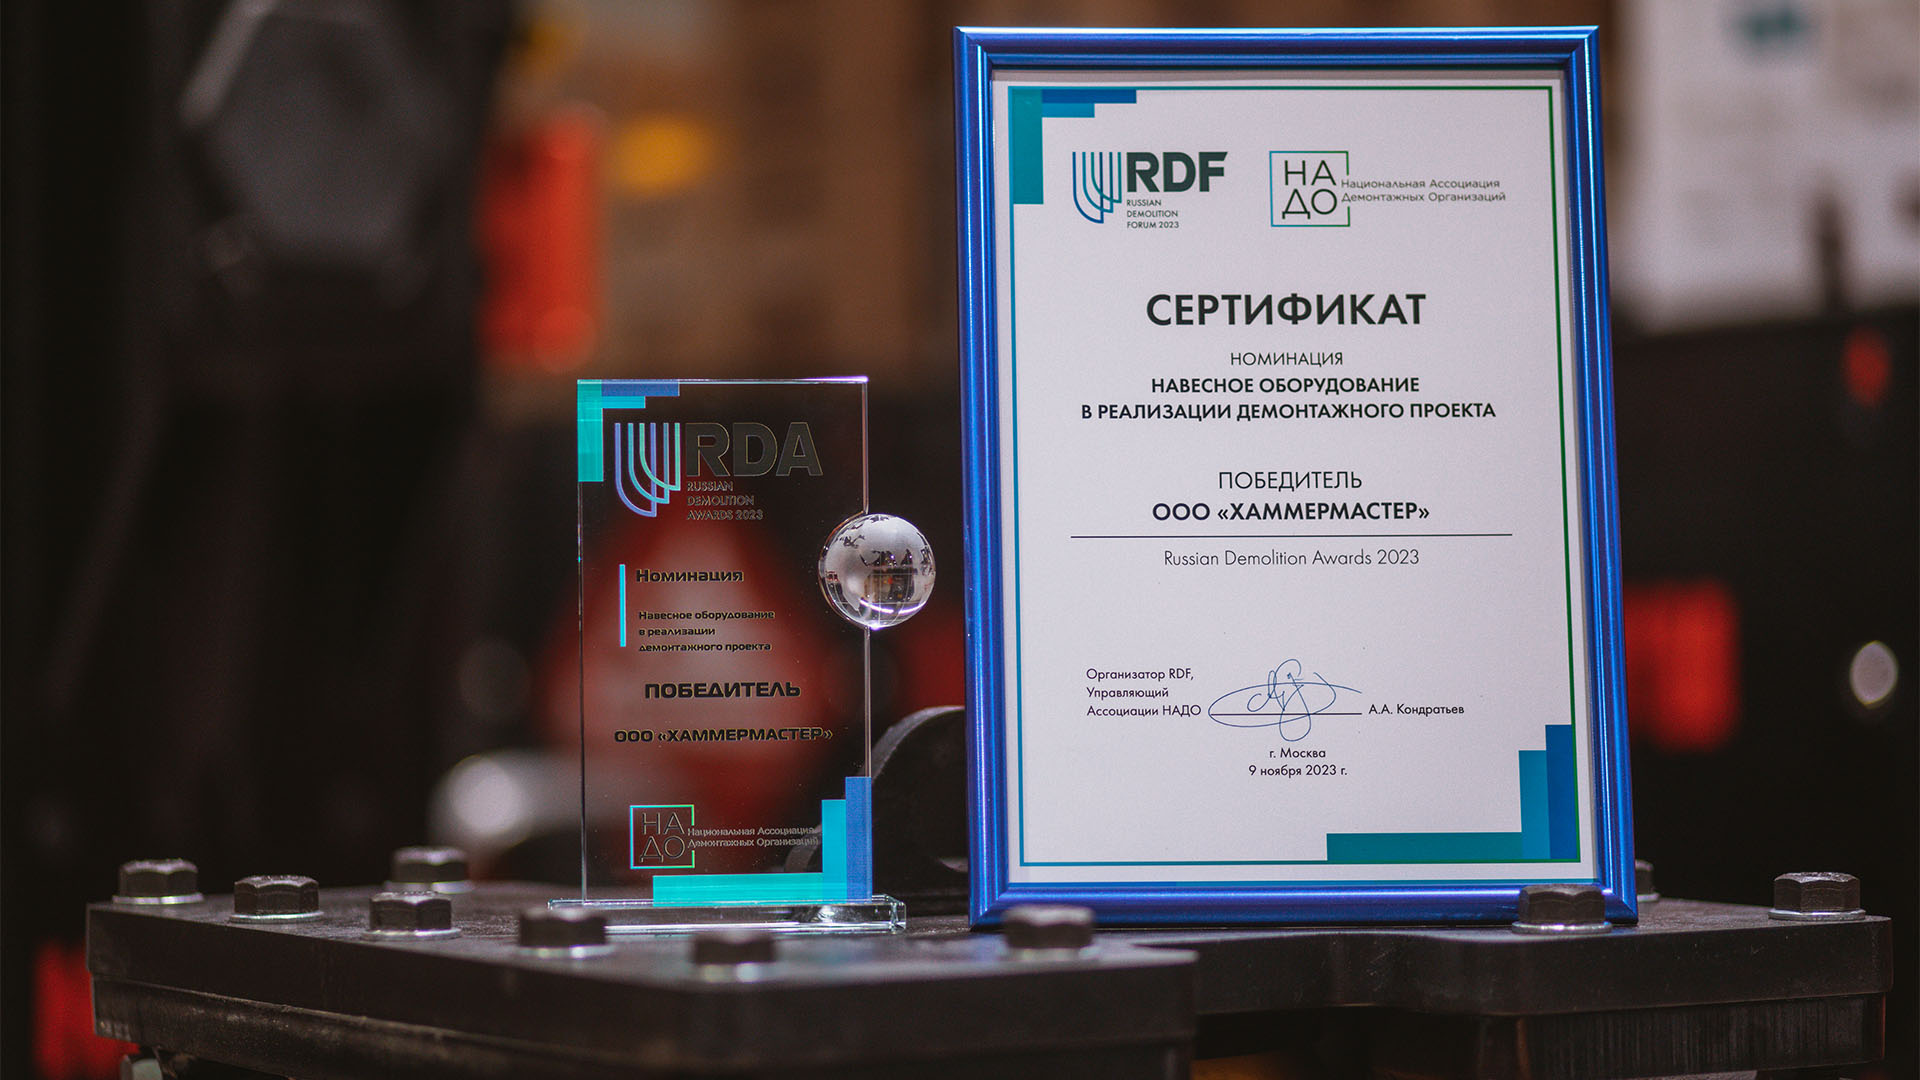 Фотография сертификата победителя конкурса в номинации Навесное оборудование в реализации демонтажного проекта